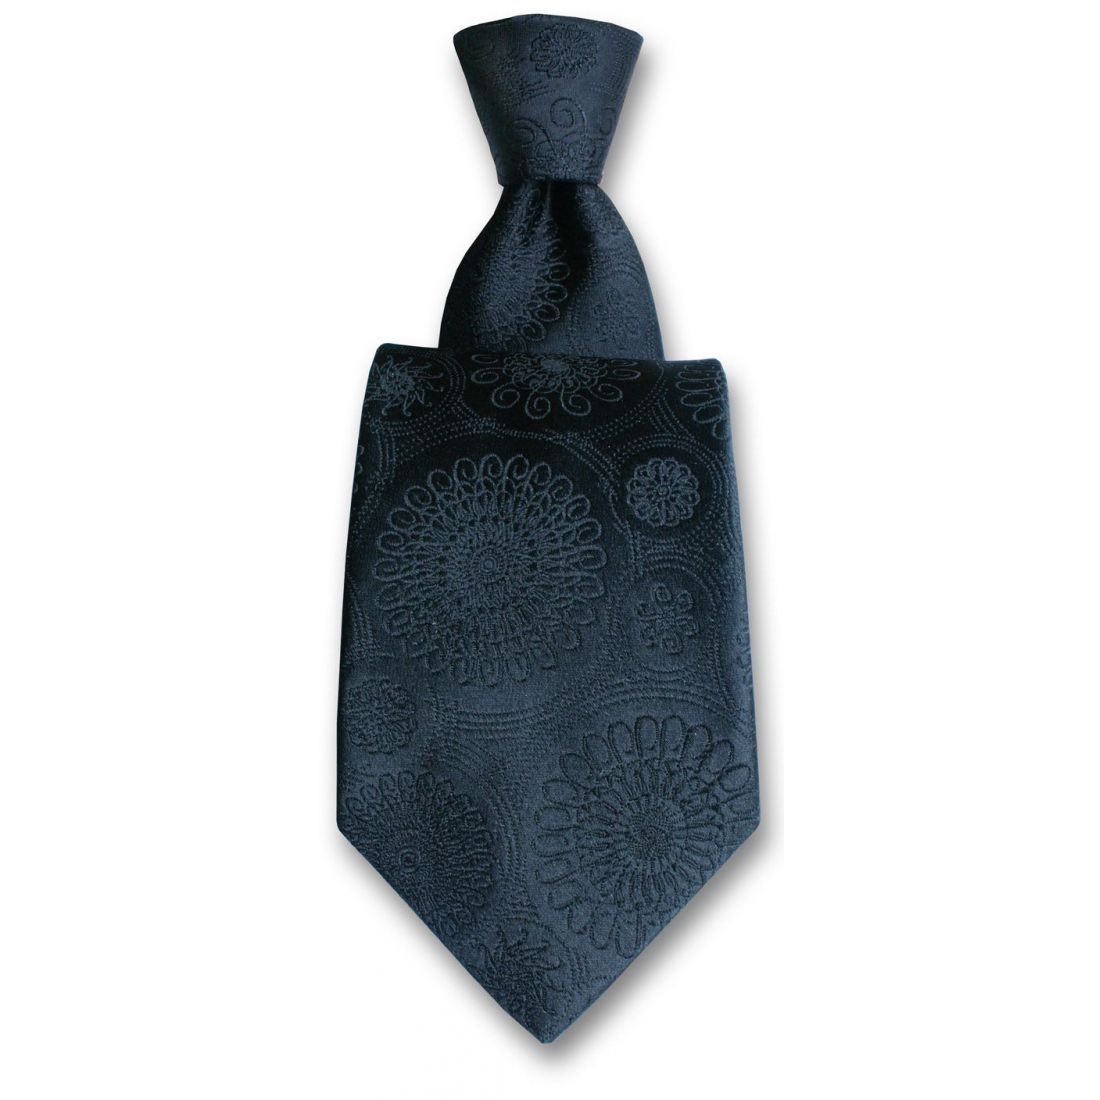 Cravate Robert Charles Astoria Noir Soie Paisley Homme Classique